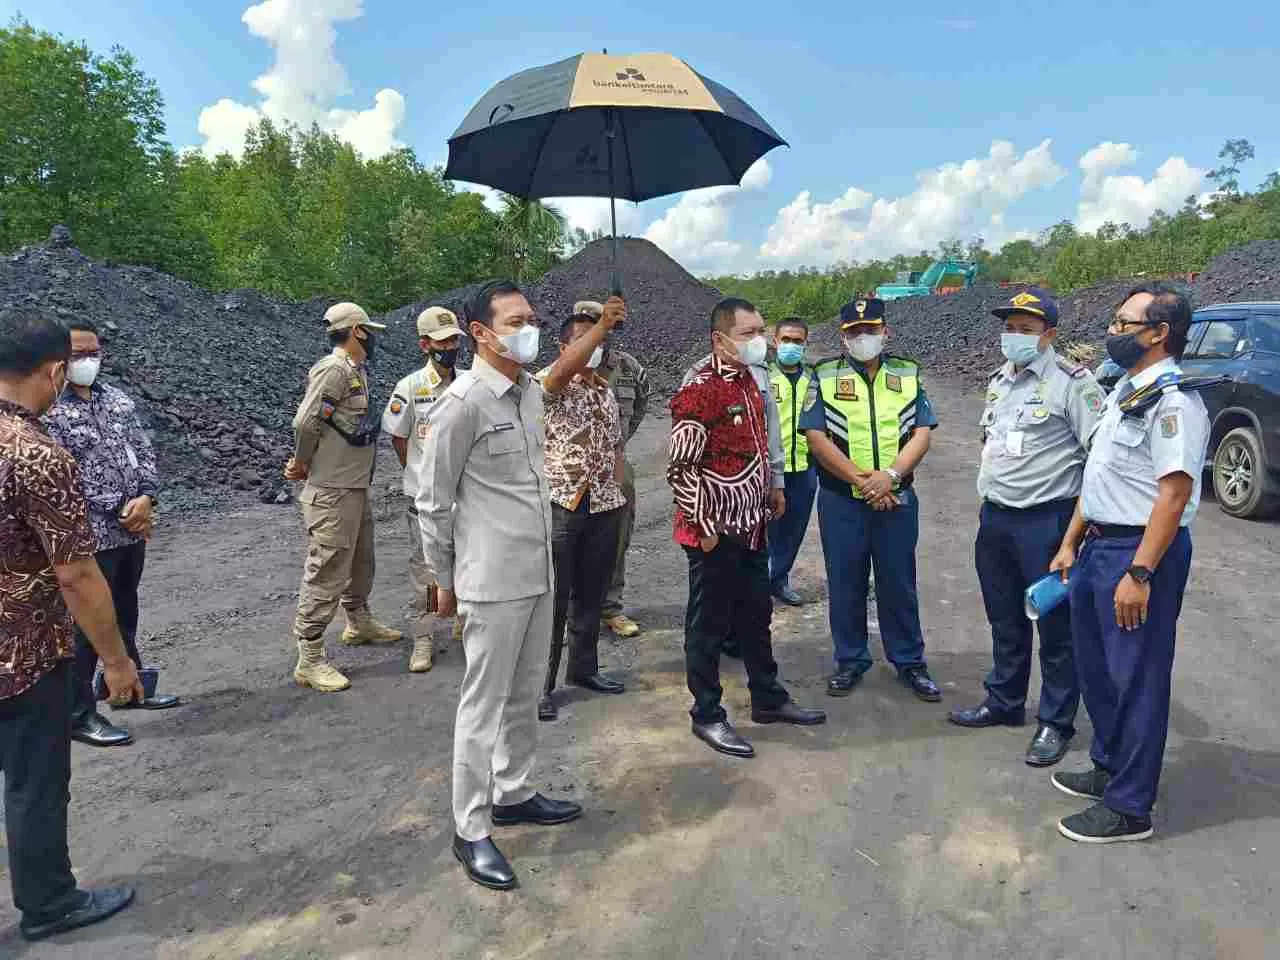 TINJAU PELABUHAN: Bupati Paser dr Fahmi Fadli dan ketua DPRD Paser Hendra Wahyudi melihat kondisi Pelabuhan Tempayang di Kecamatan Kuaro yang diduga terjadi penumpukan batu bara, Kamis (10/6).